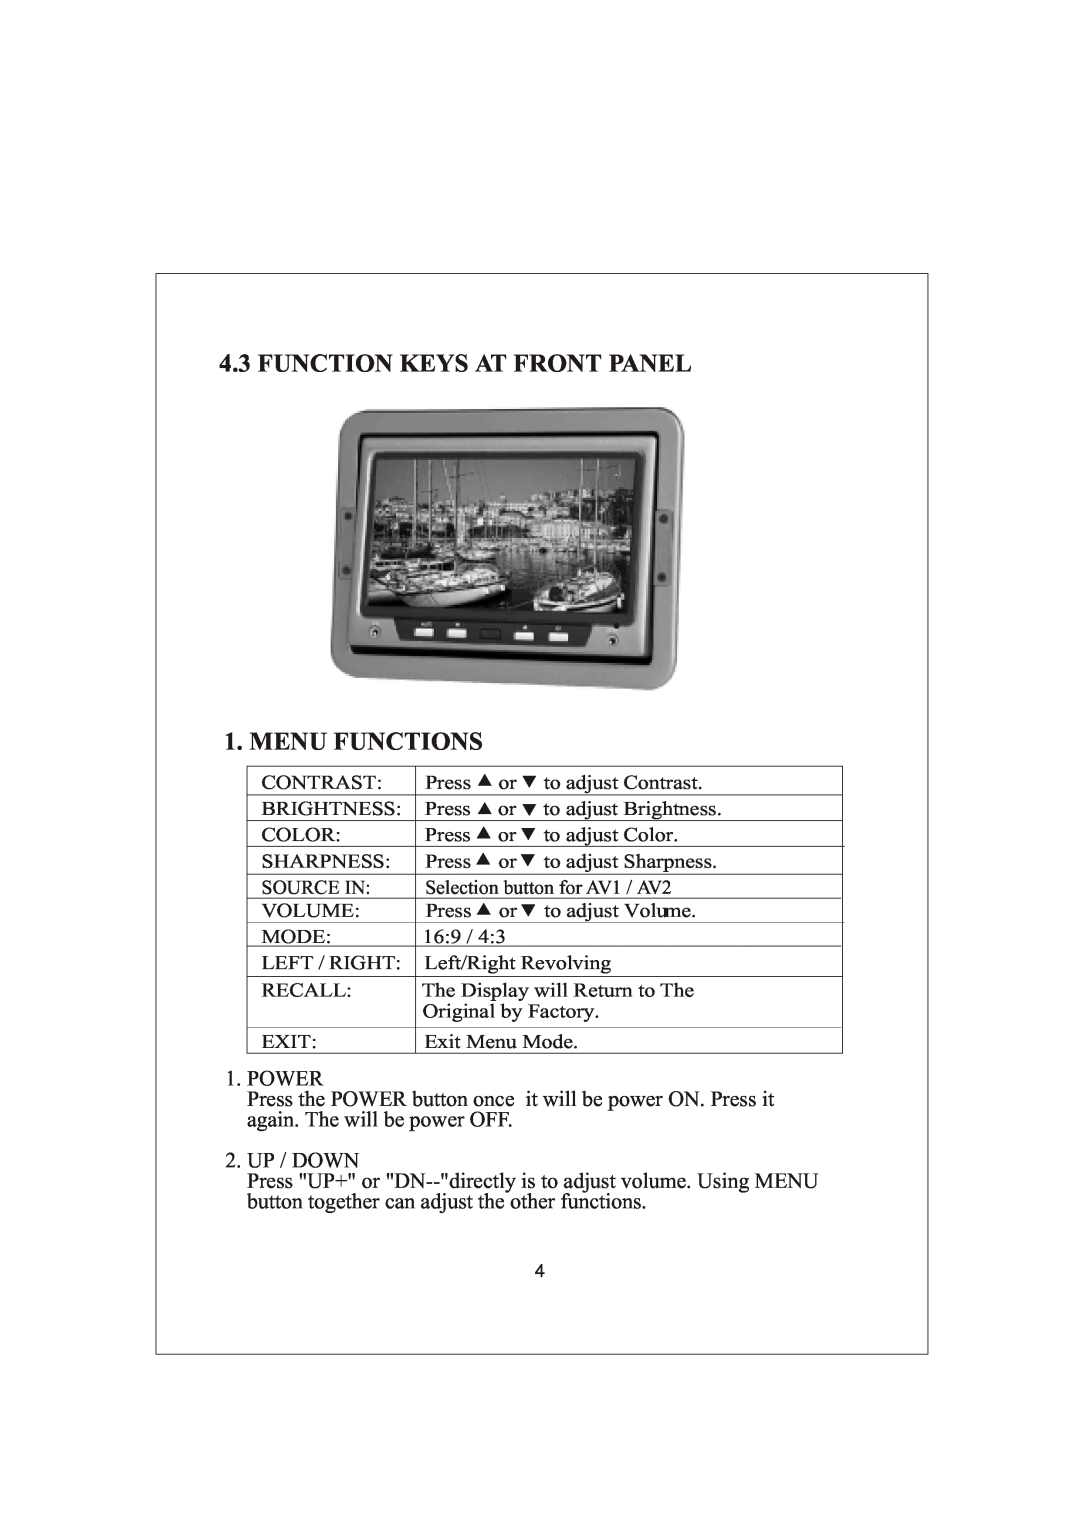 Radio Shack PLVSHR77 manual FUNCTION KEYS AT FRONT PANEL 1. MENU FUNCTIONS 